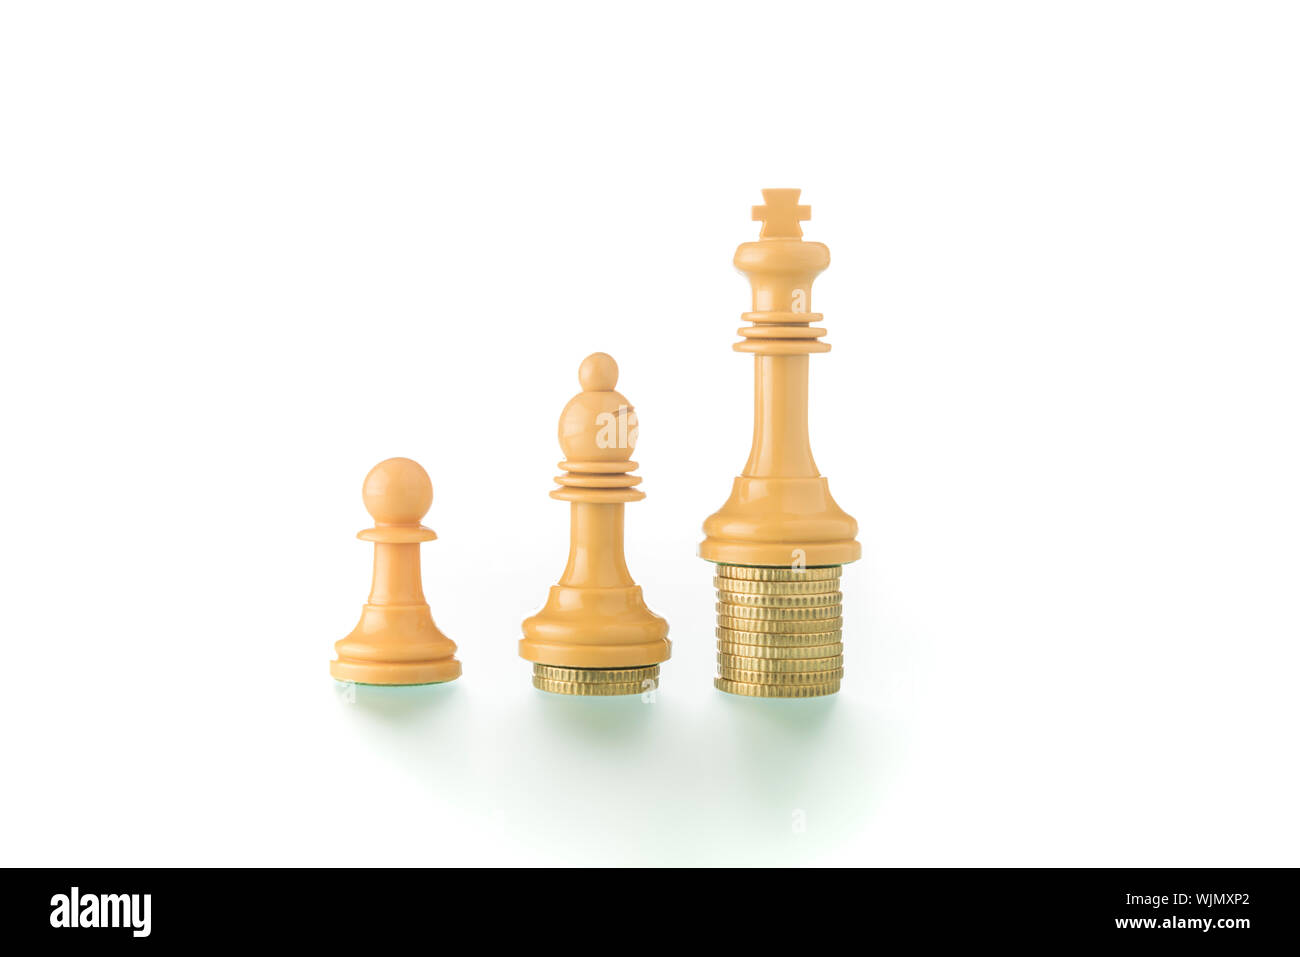 Konzeptionelle und metaphorische Fotografie mit Schachfiguren und Münzen auf weißem Hintergrund zeigt das Konzept der sozialen und wirtschaftlichen Realität. Stockfoto